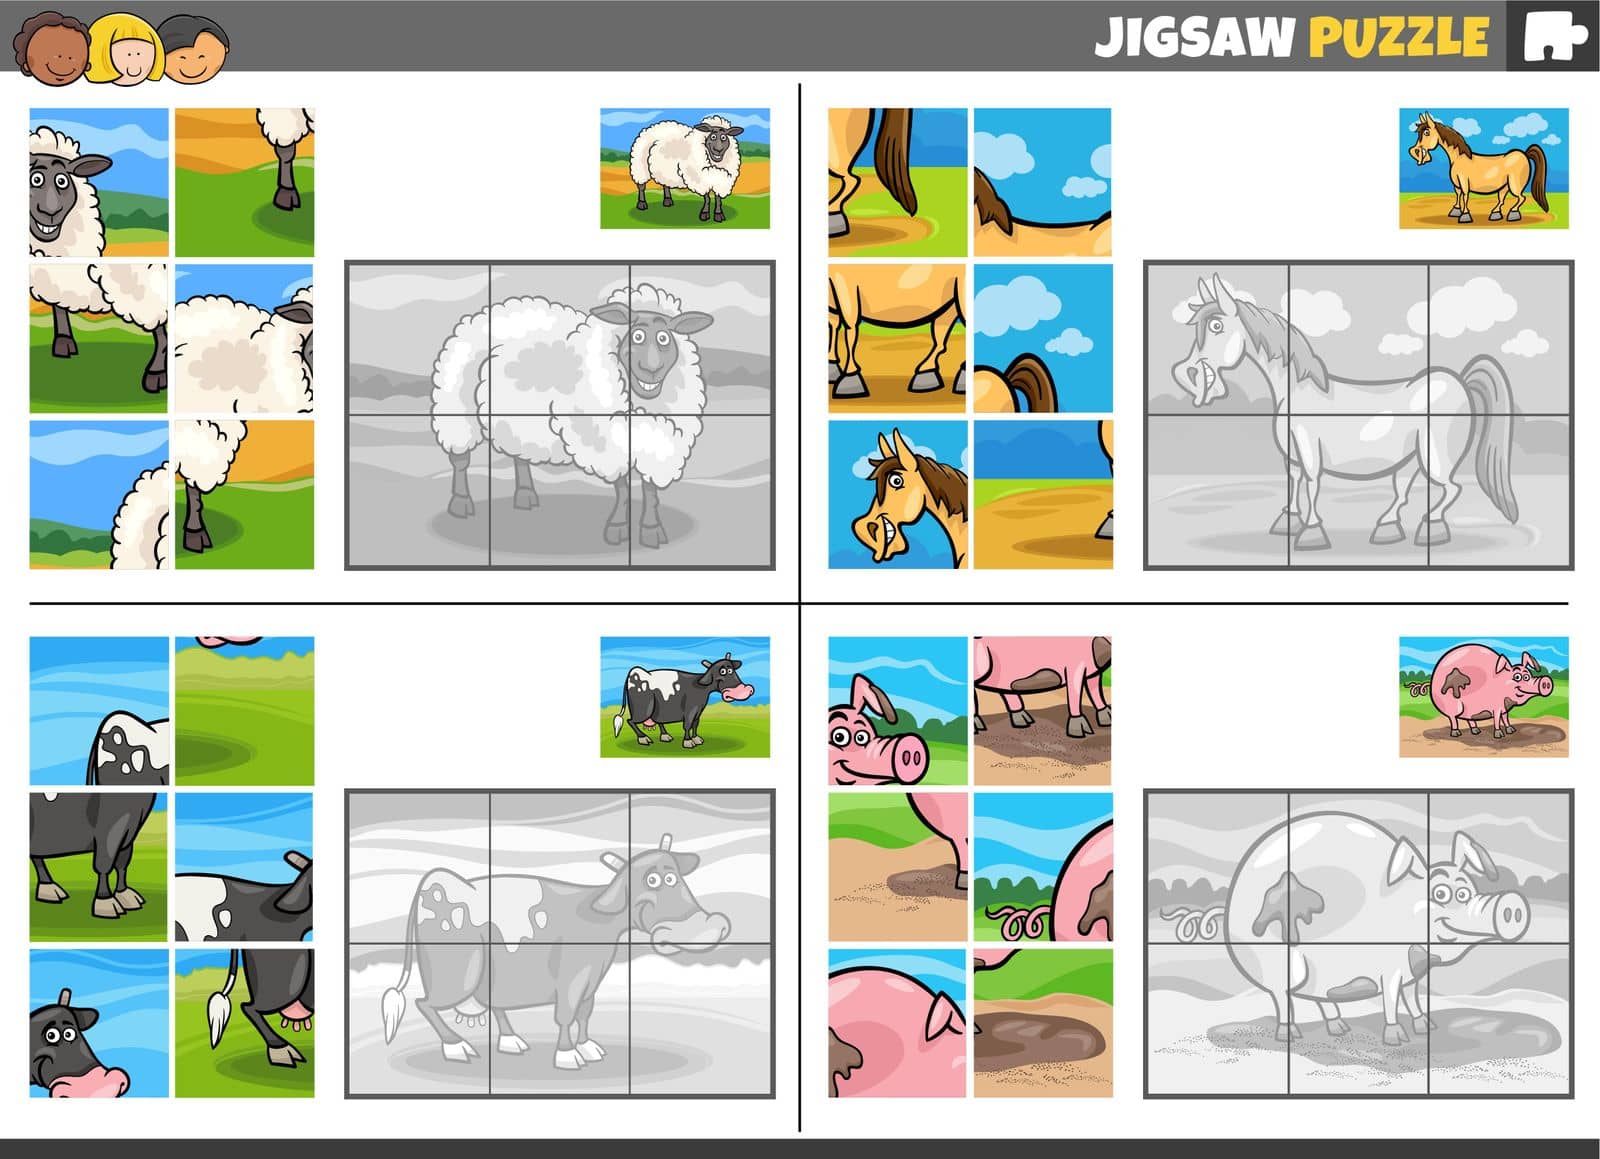 jigsaw puzzle game set with comic farm animals by izakowski